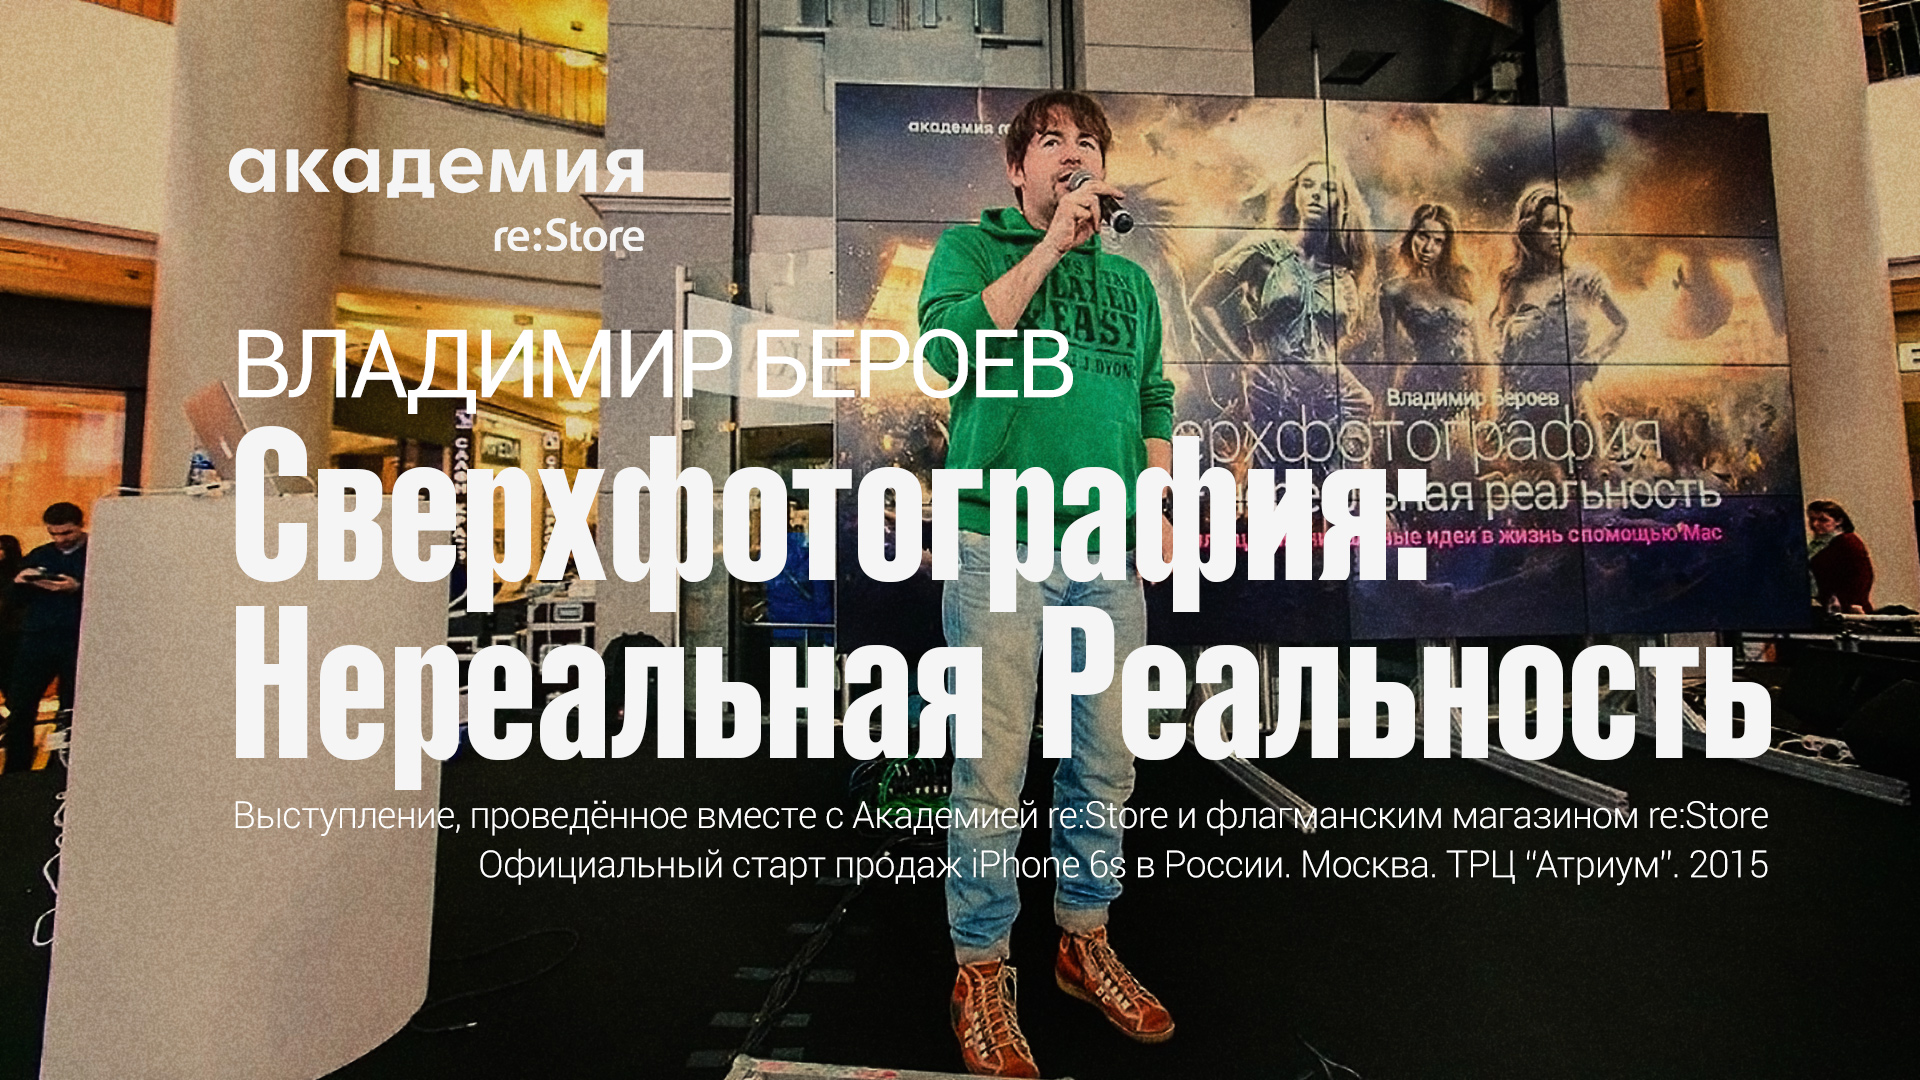 Сверхфотография | Выступление Владимира Бероева на старте продаж iPhone 6s | Москва. Атриум